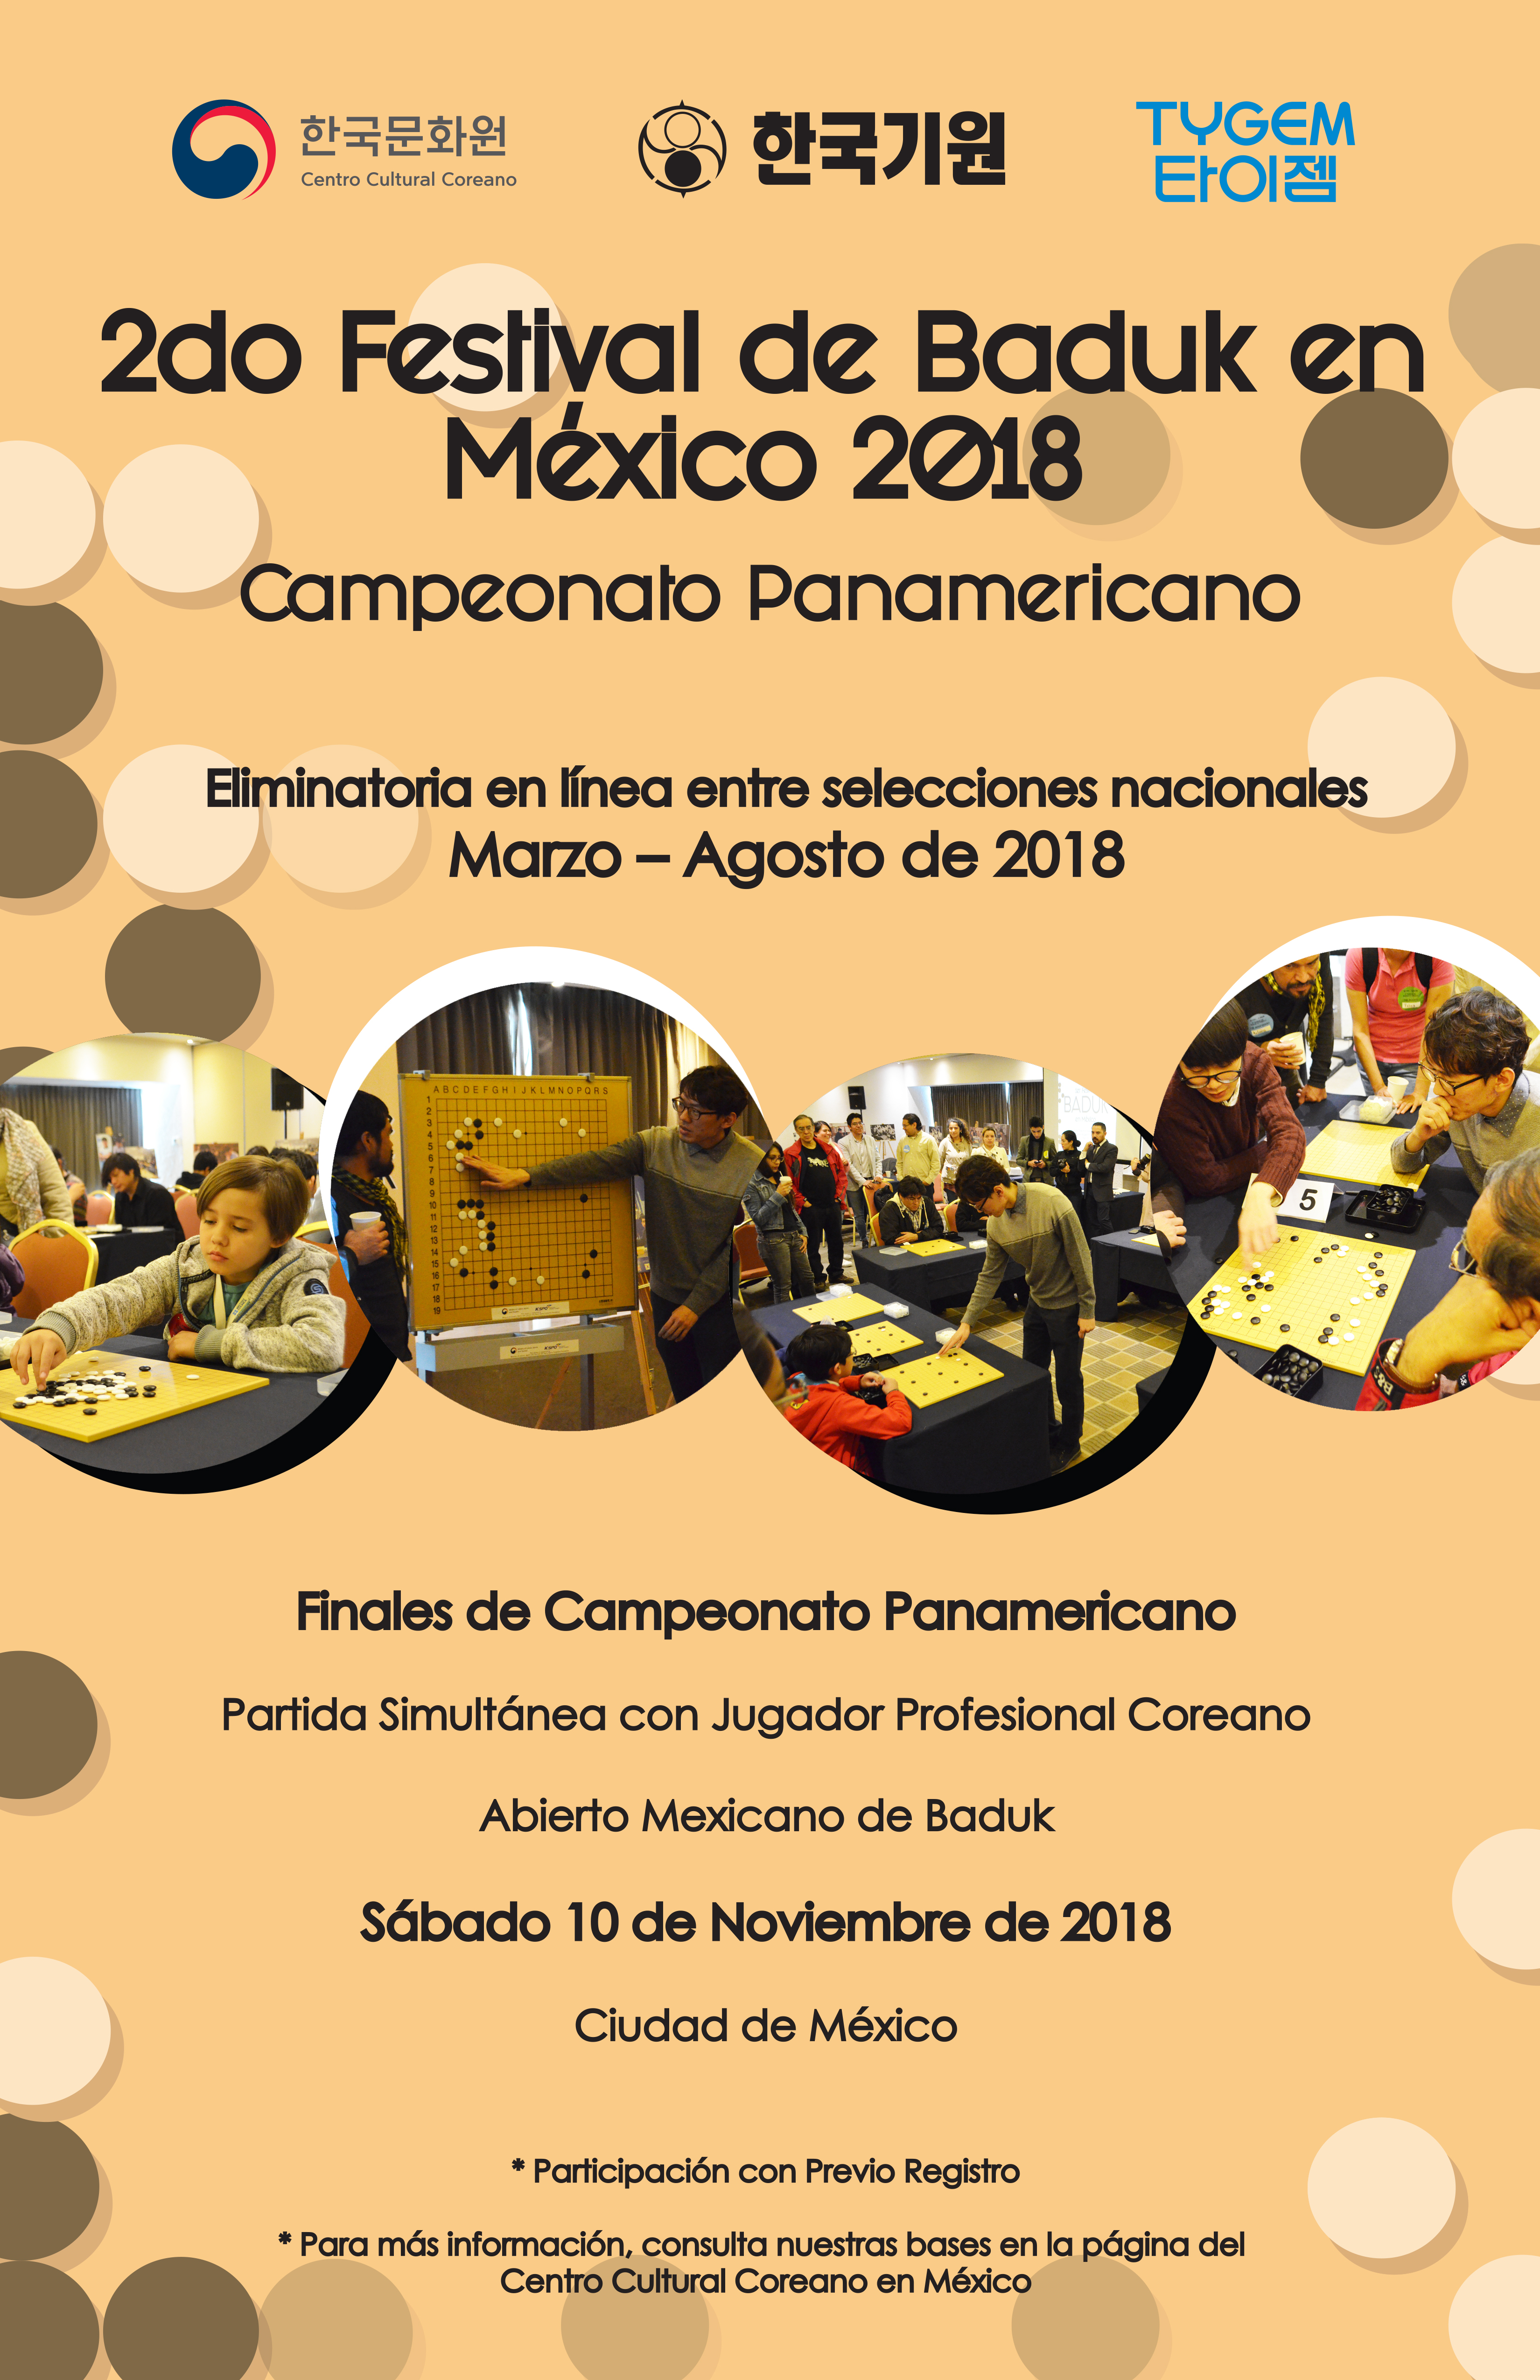 2.º Festival de Baduk en México - Campeonato Panamericano - 2018